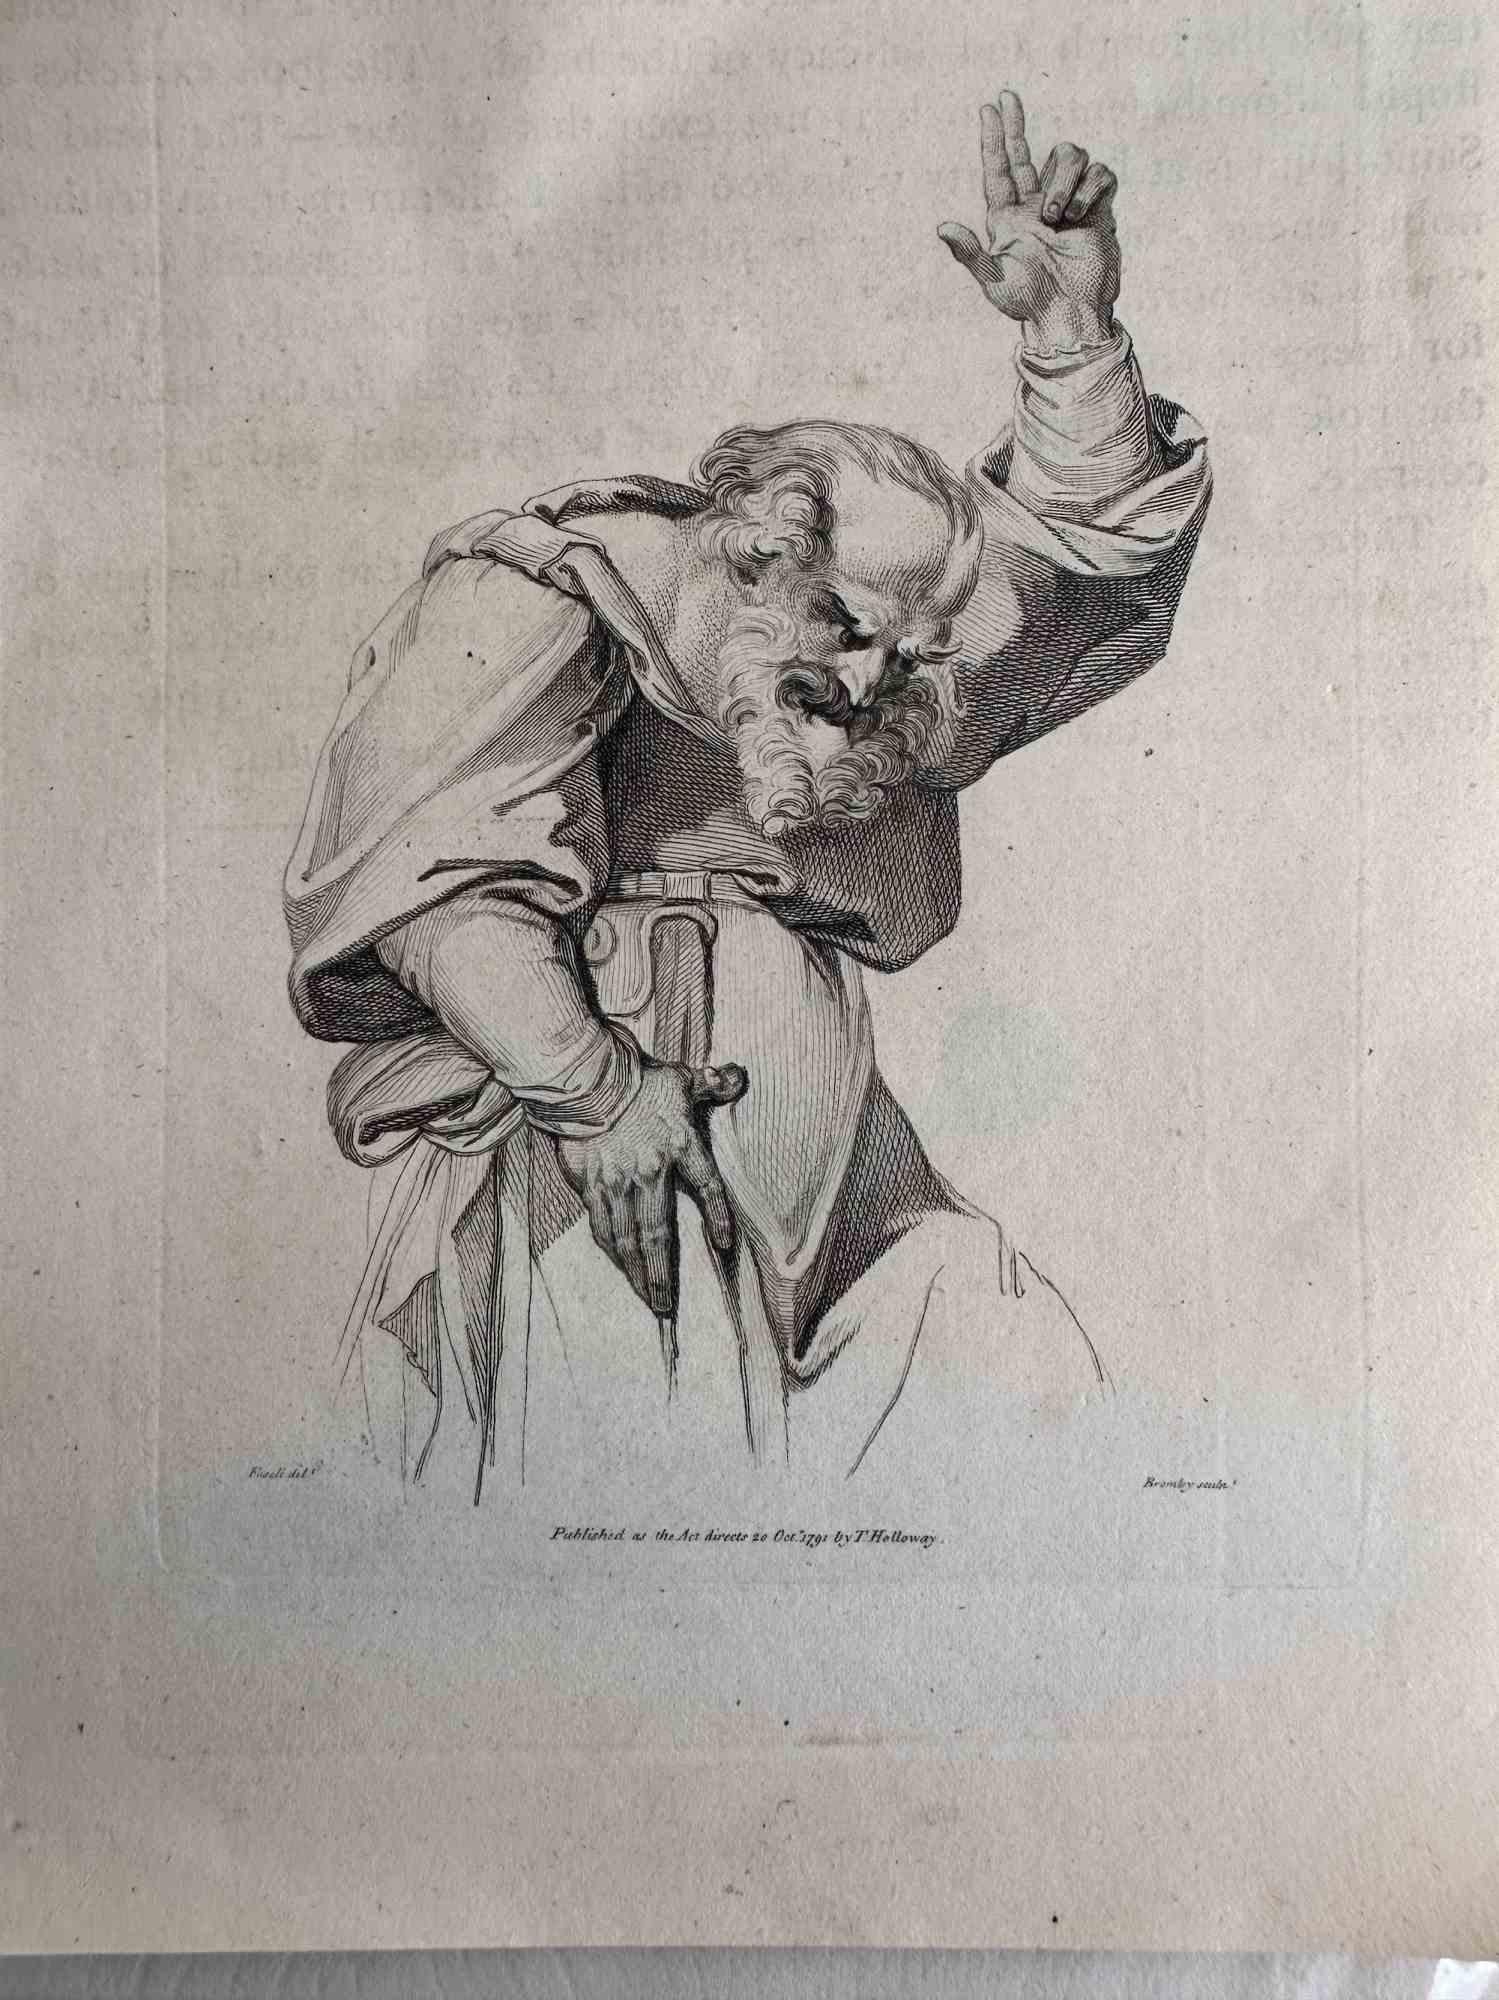 Henry Fuseli Figurative Print – Ein alter Prophet, der preacht, Radierung – Radierung – spätes 18. Jahrhundert